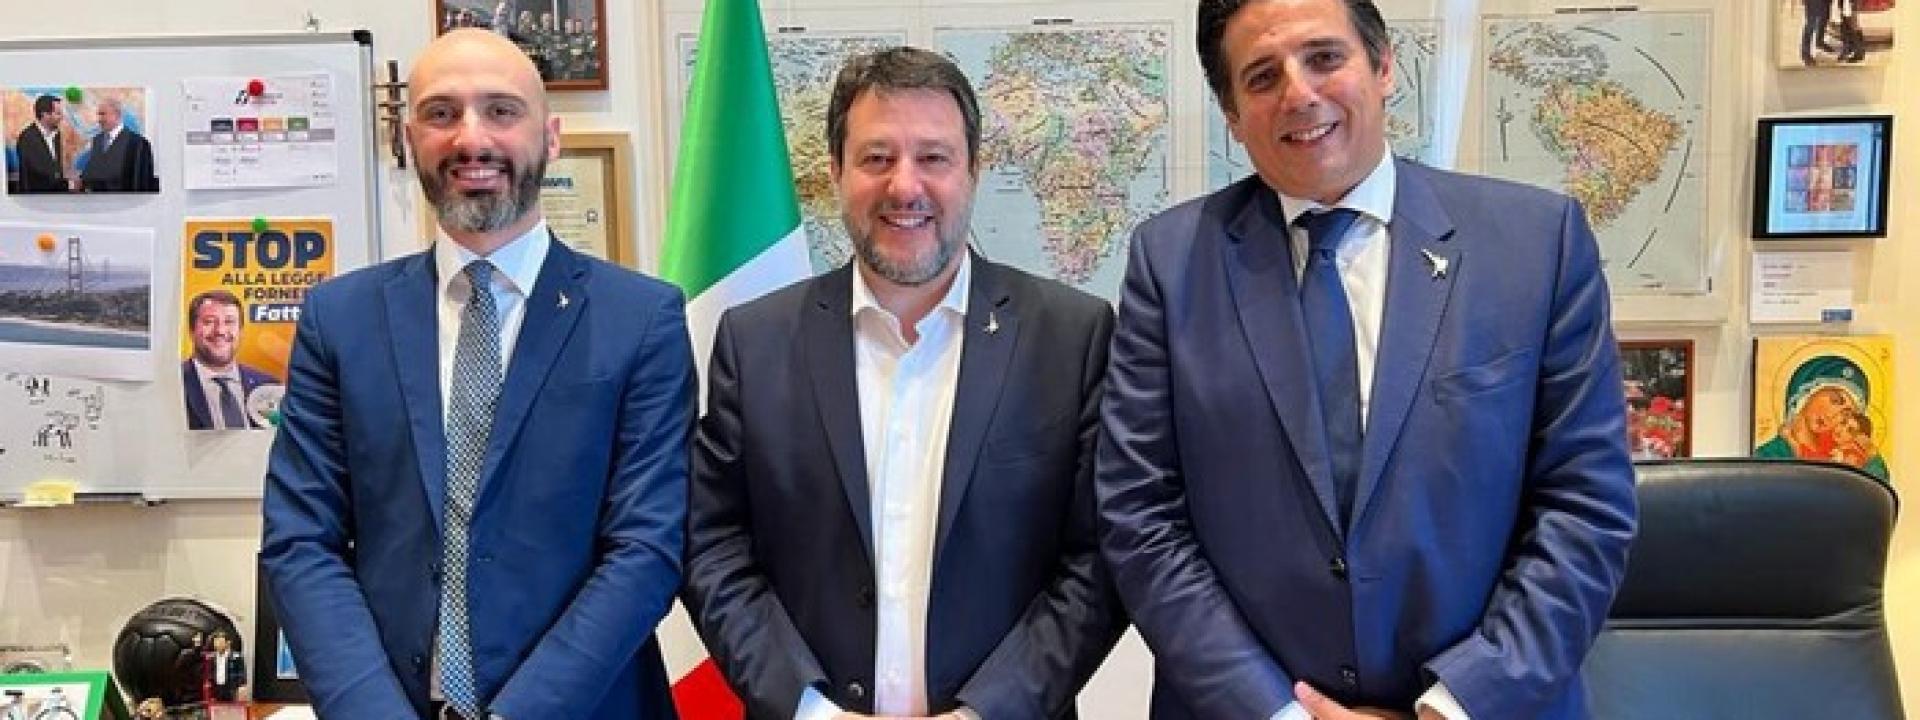 Marche - Lega, Marchetti lascia il testimone da commissario regionale a Lucentini